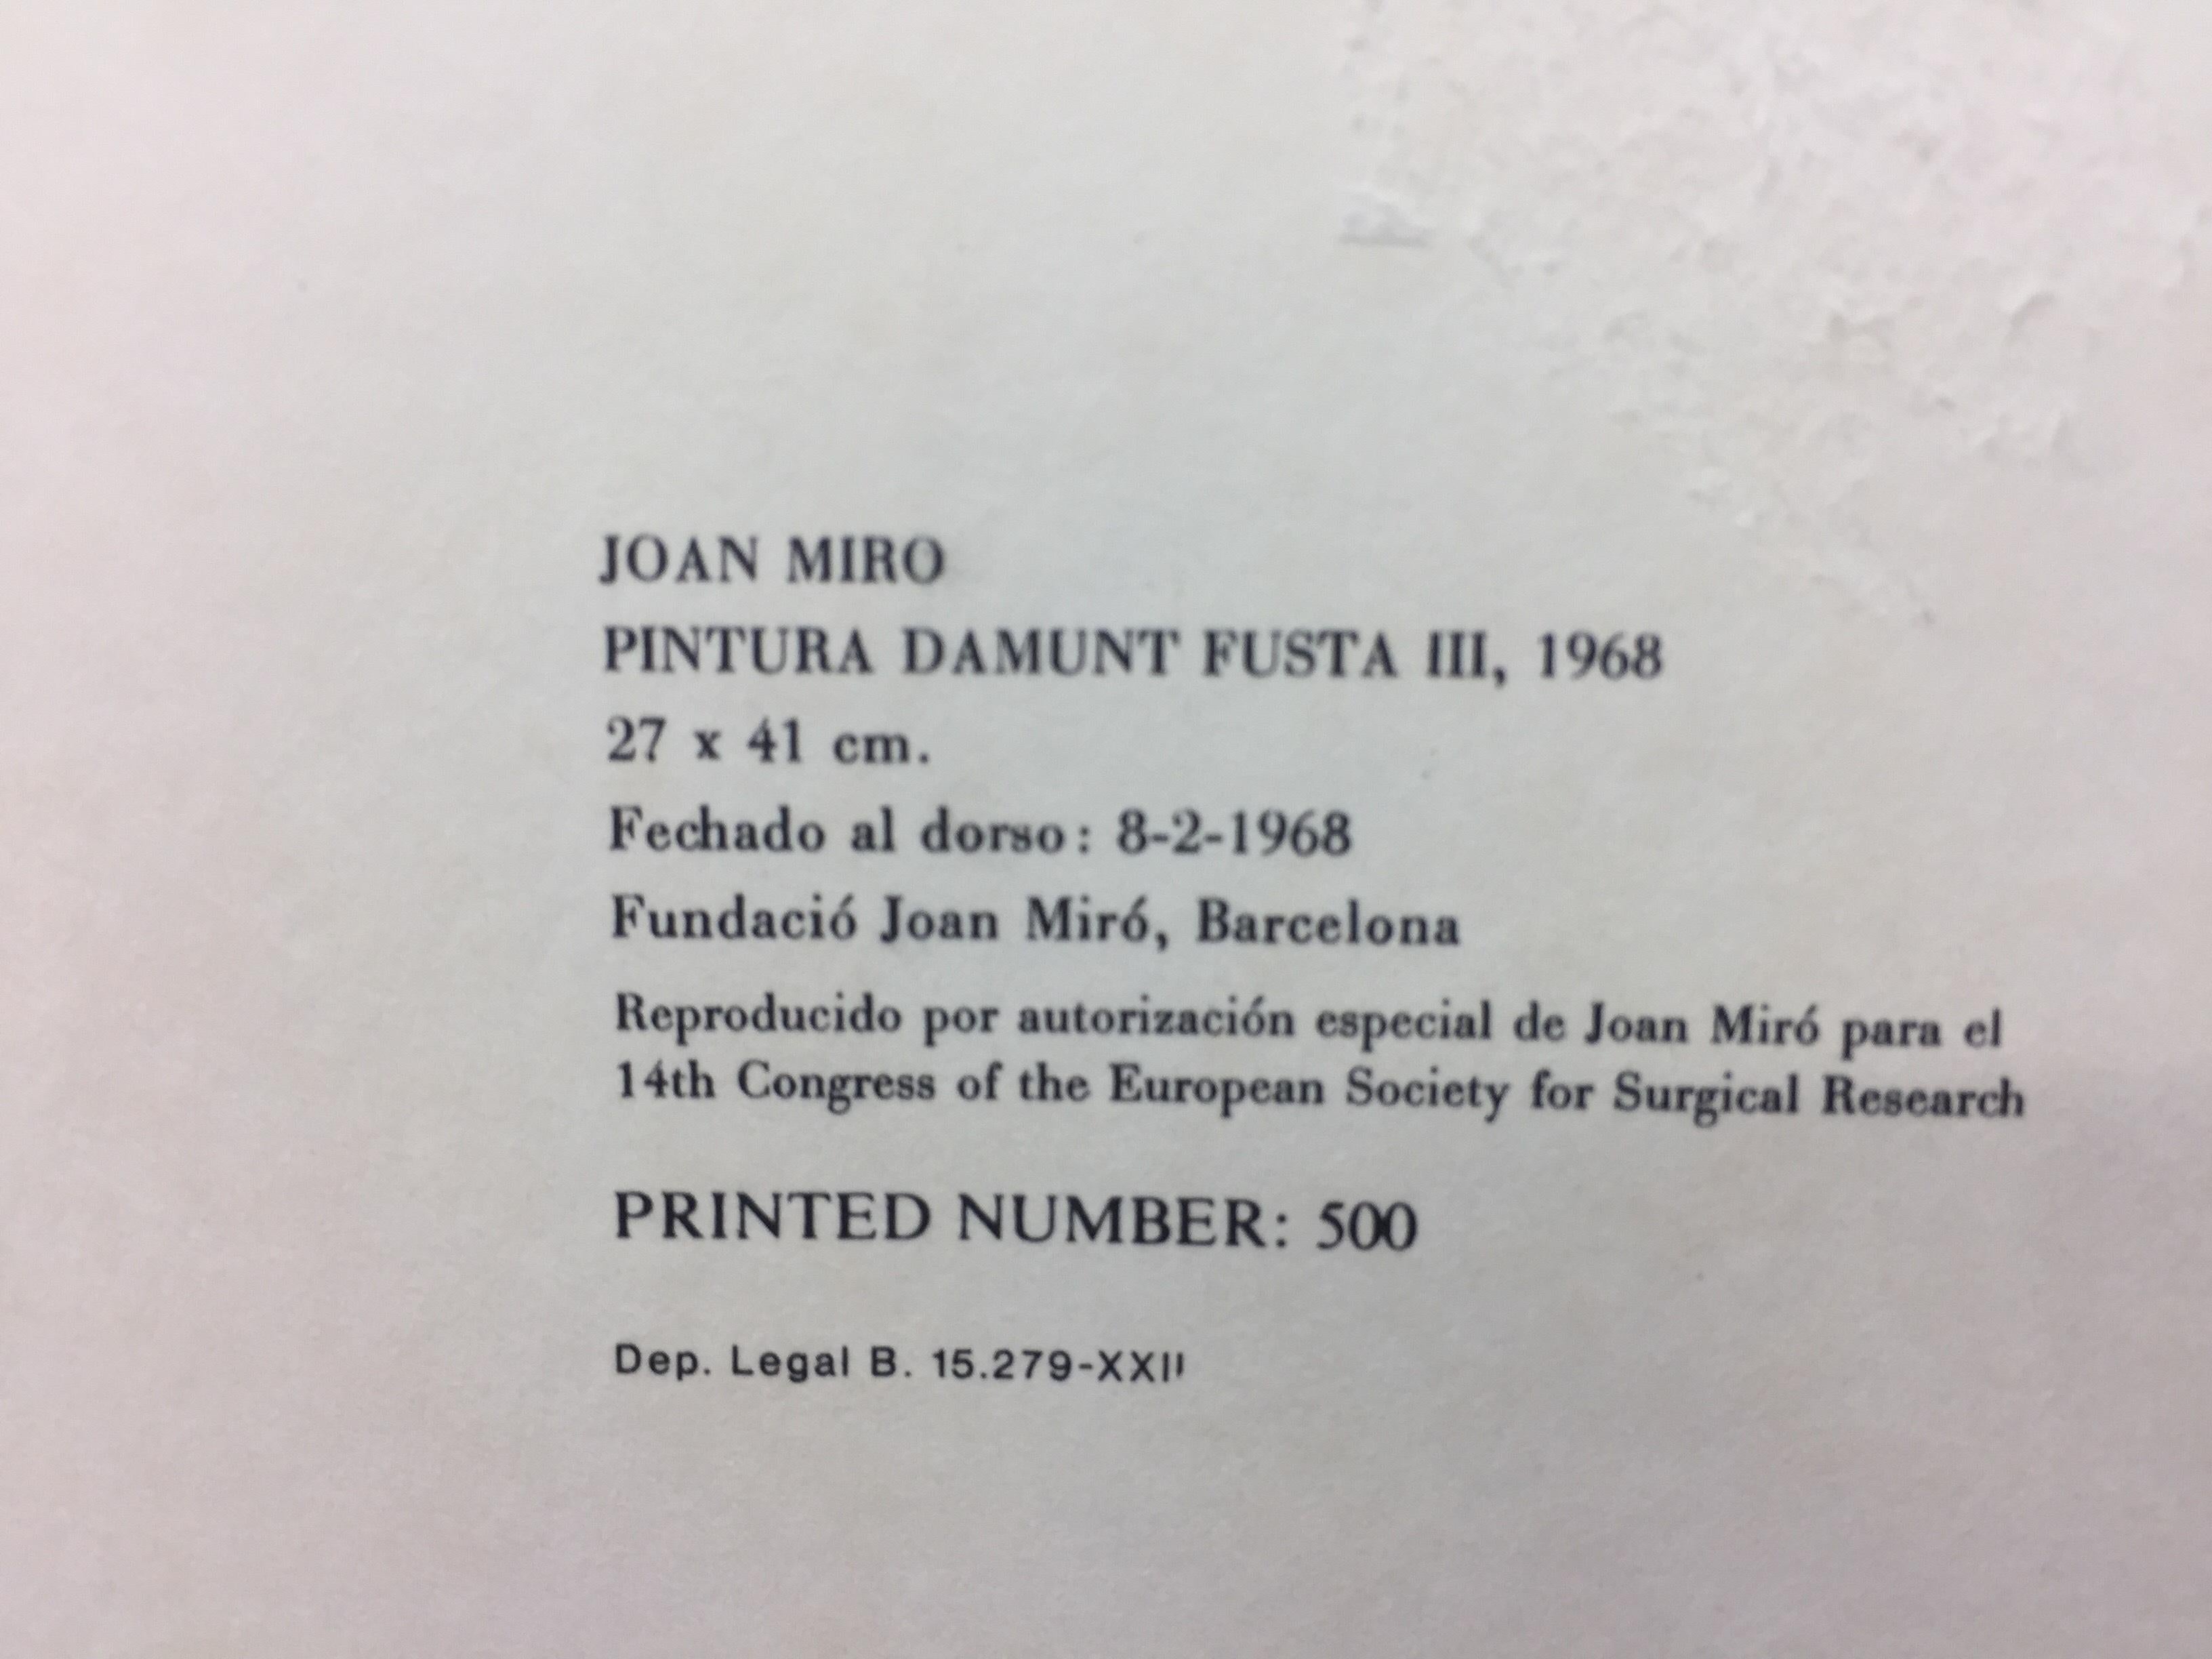 Reproduktionslithografie im Vintage-Stil, die ein Werk von Miro aus dem Jahr 1968 mit dem Titel PINTURA DAMUNT FUSTA III darstellt
herausgegeben von der Stiftung Joan Miro, Barcelona
Auflage von 500 Stück


MIRO Ferra, Joan (Barcelona, 1893 - Palma